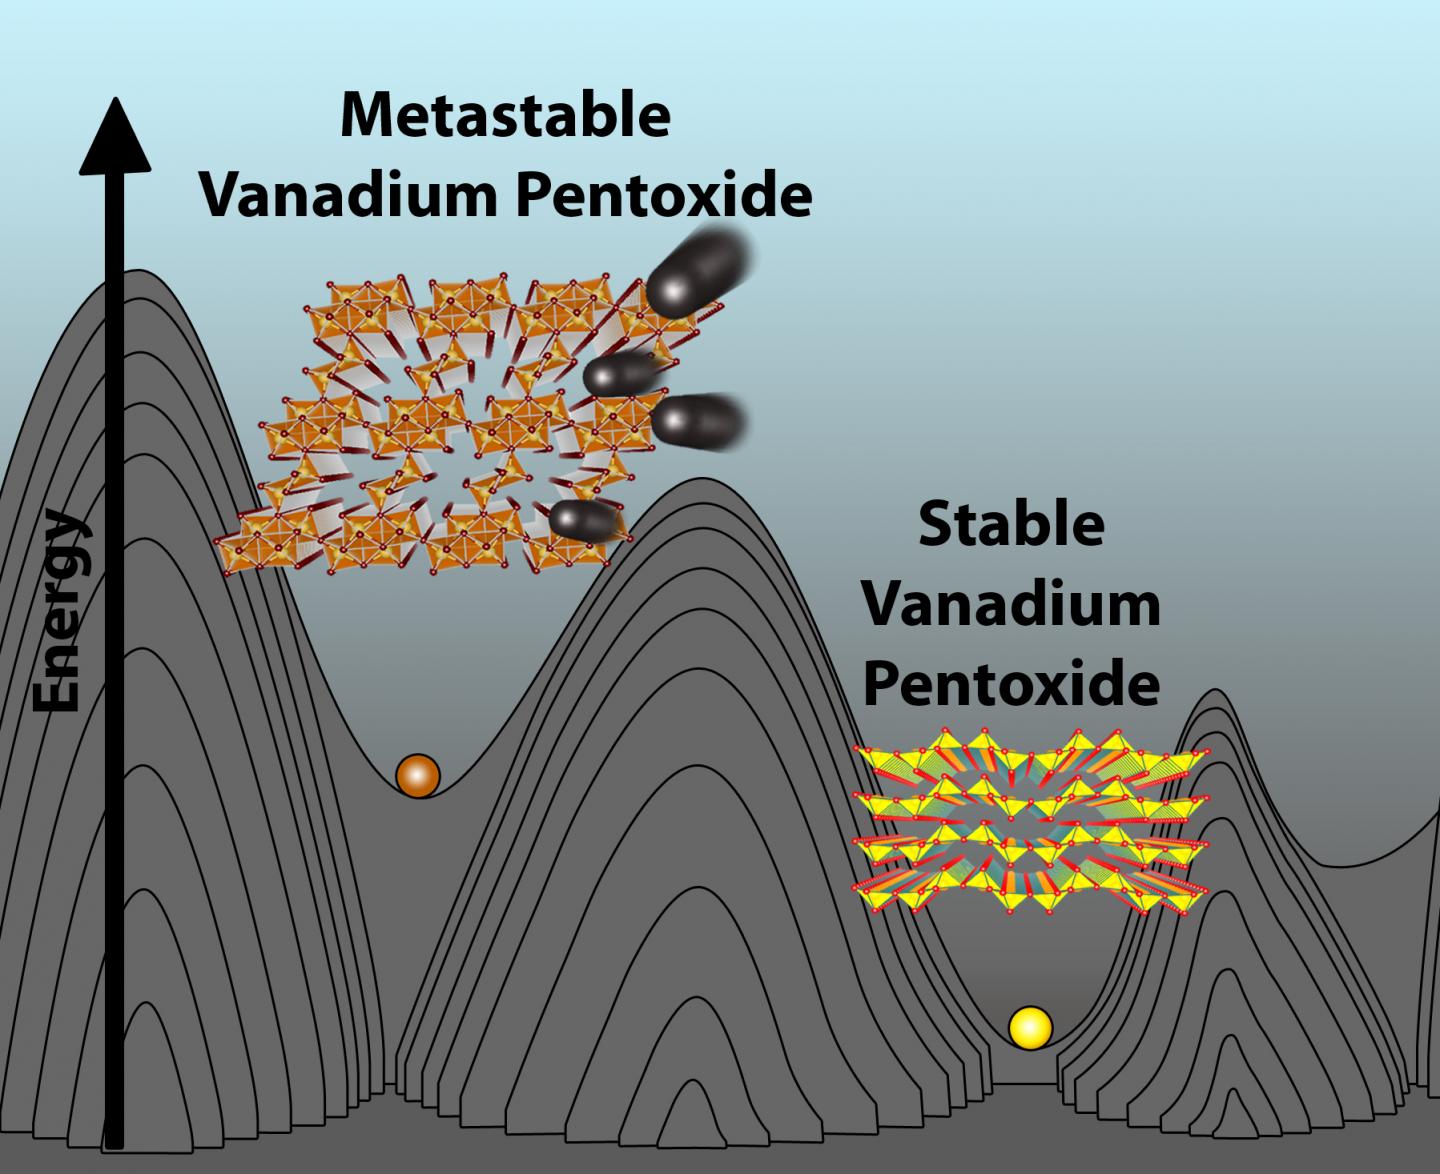 Venadium Pentaoxide